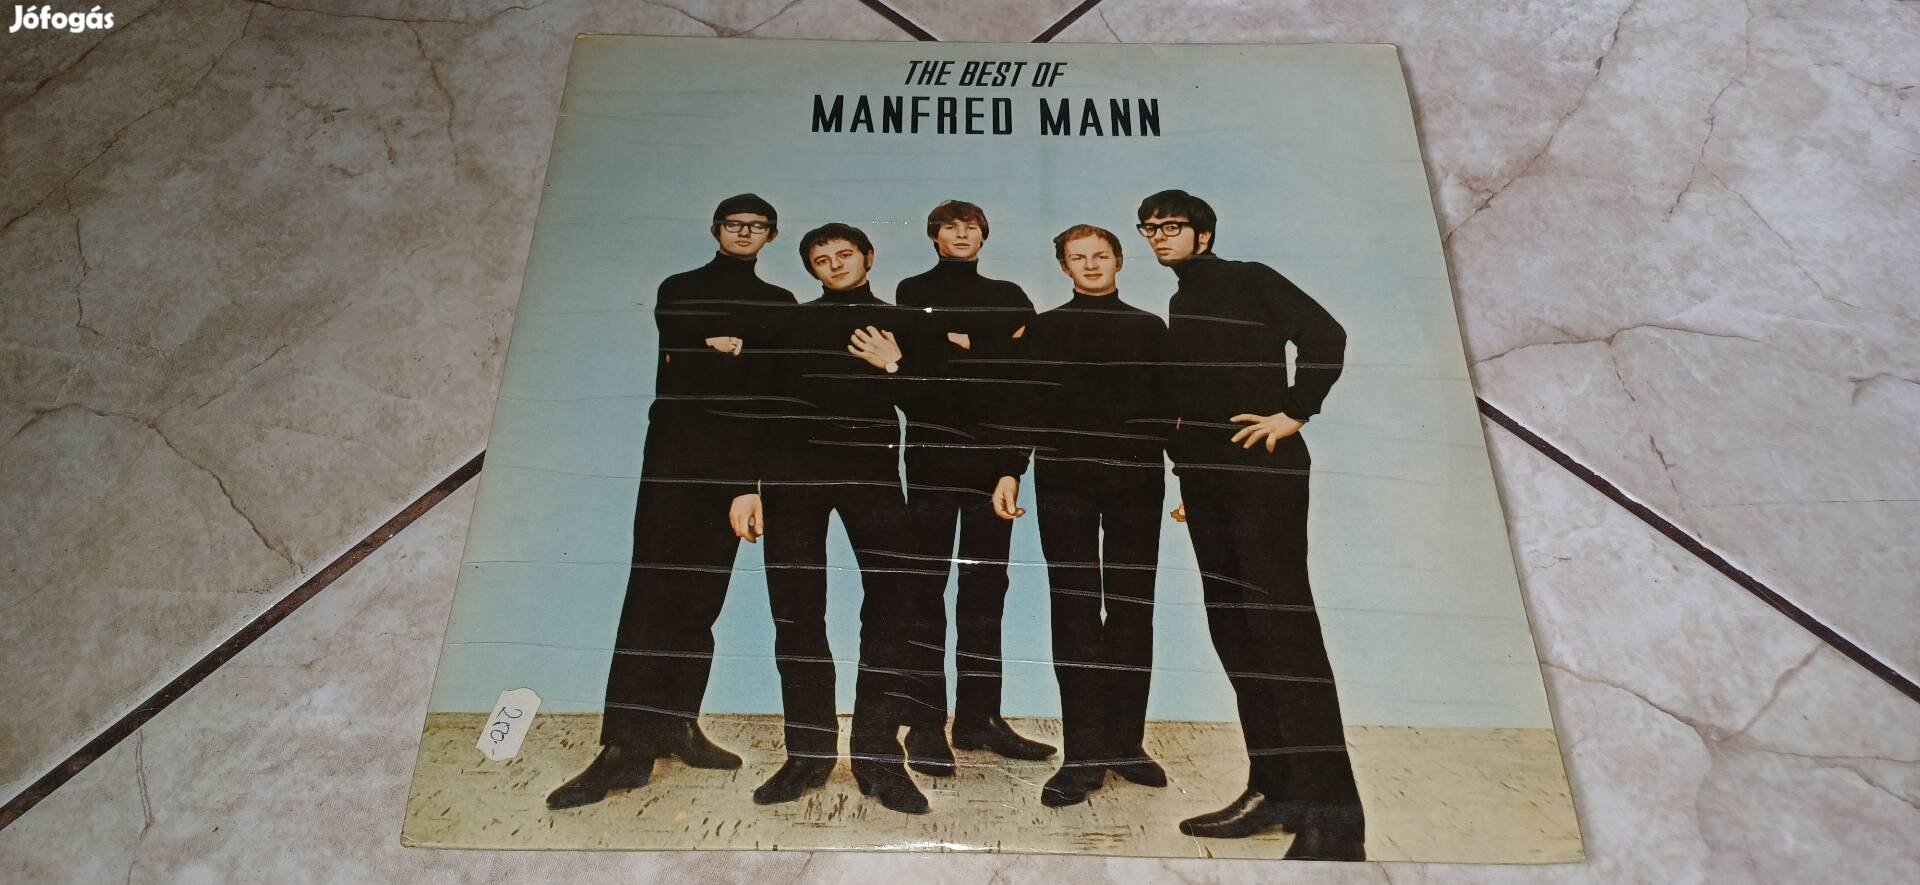 Manfred Mann bakelit lemez